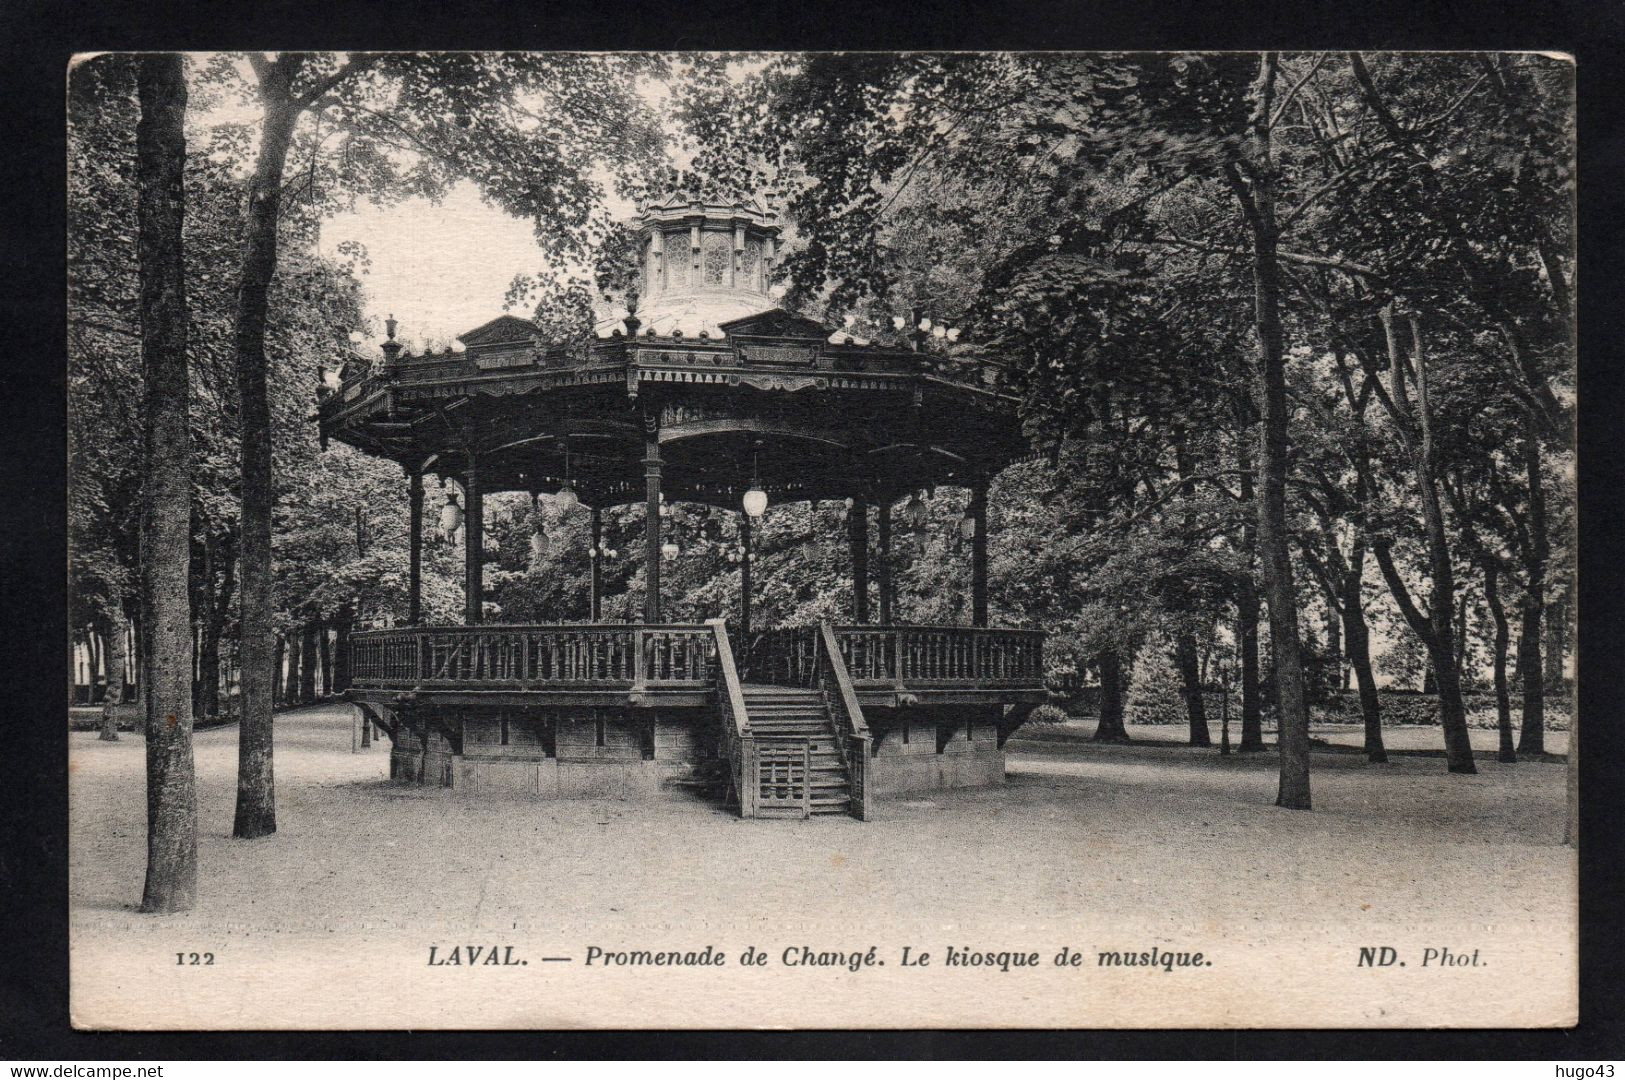 (RECTO / VERSO) LAVAL EN 1915 - N°122 - PROMENADE DE CHANGE - LE KIOSQUE A MUSIQUE - CAHET MILITAIRE - CPA - Laval